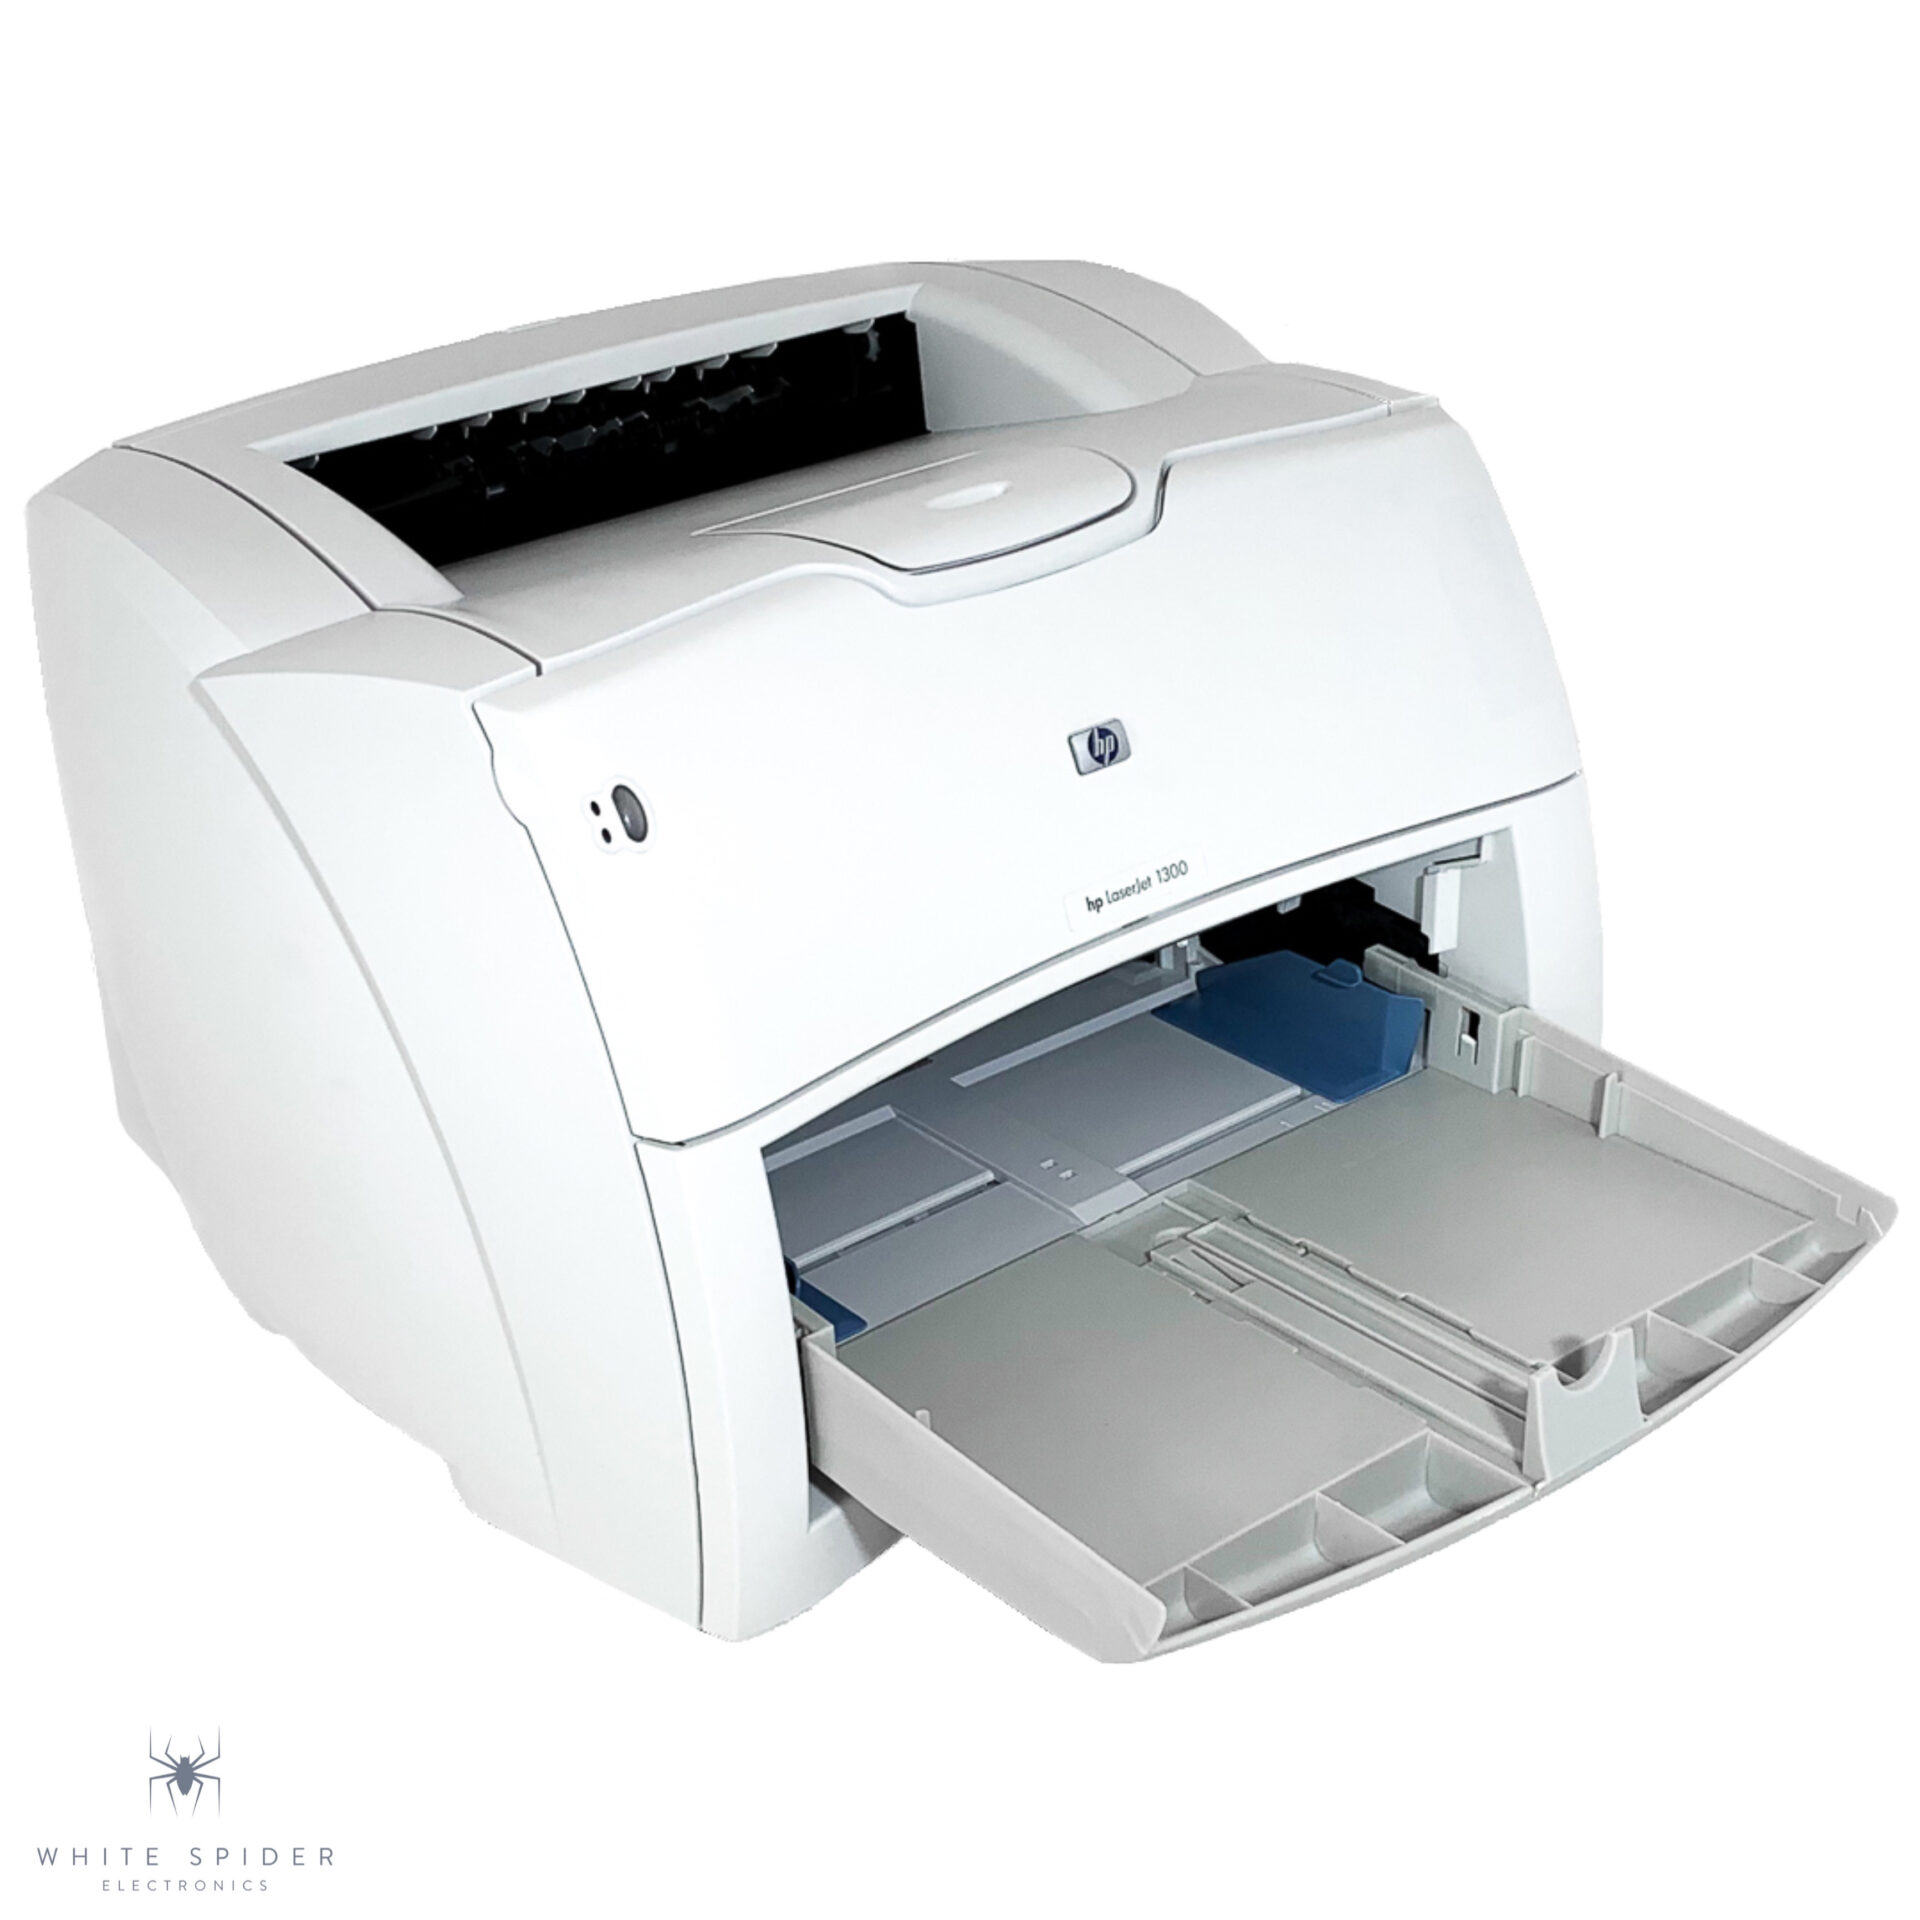 LaserJet 1300 Printer series